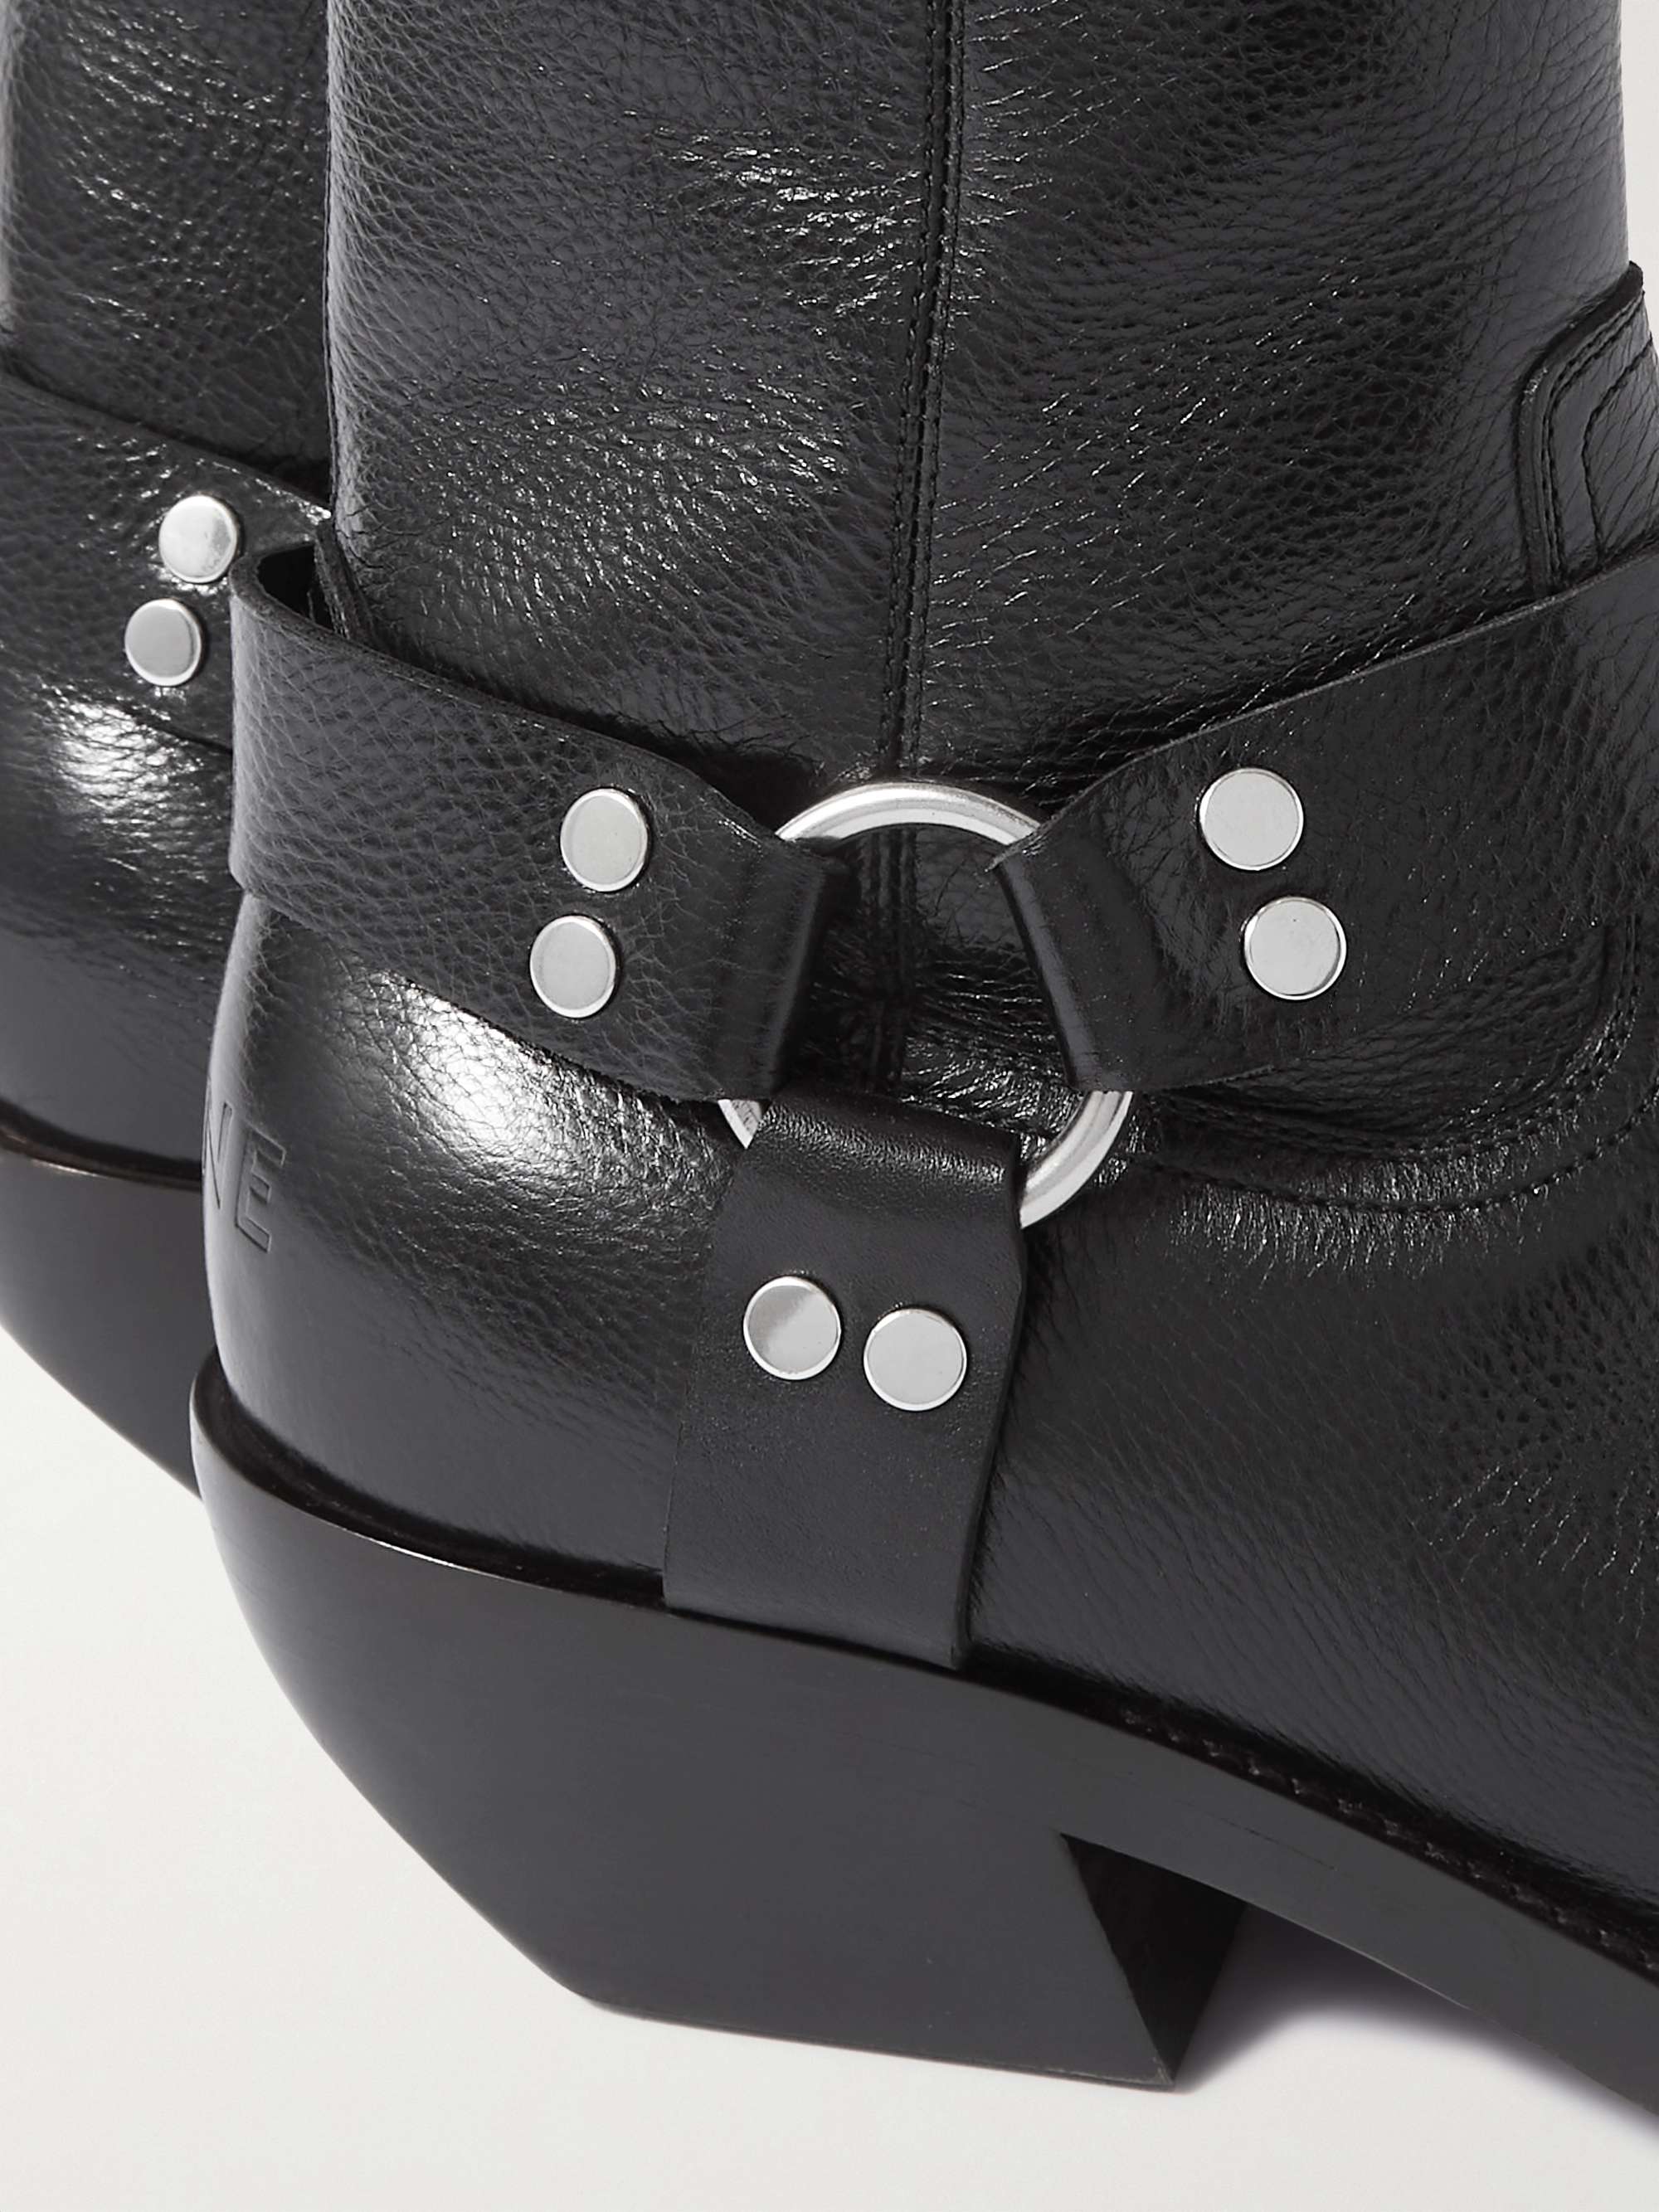 CELINE HOMME Embellished Leather Boots